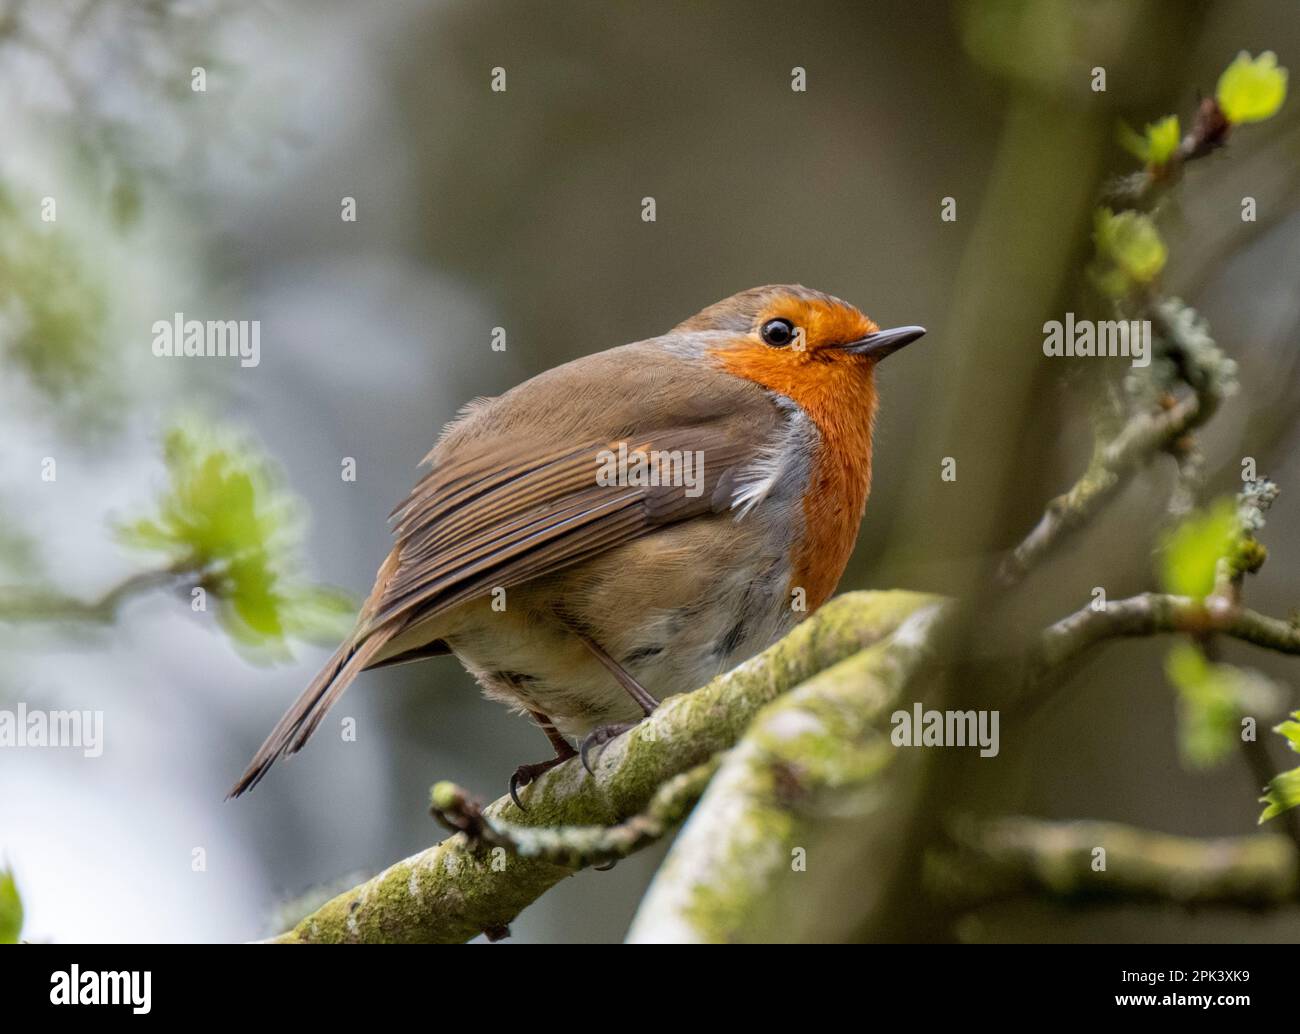 Robin thronte auf einem Zweig mit Essen im Schnabel, Almondell Country Park, West Lothian, Schottland. Stockfoto